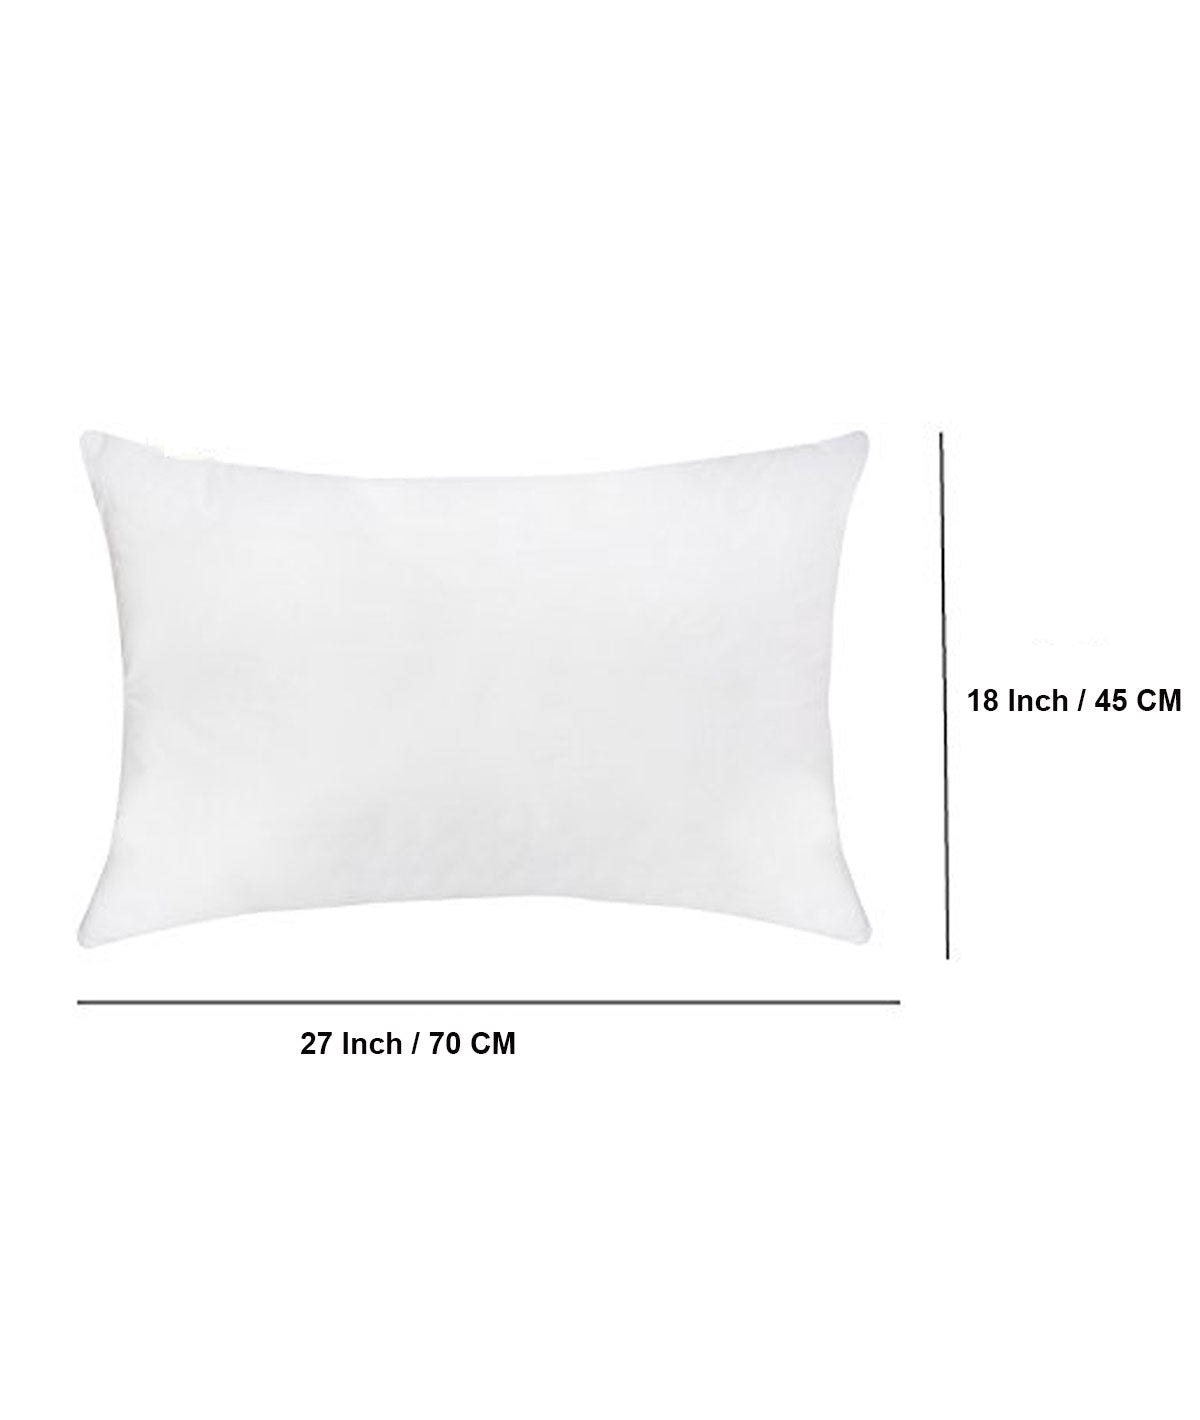 Pluchi Rectangular Pillow Filler 45 Cm X 70 Cm  (18" x 27")